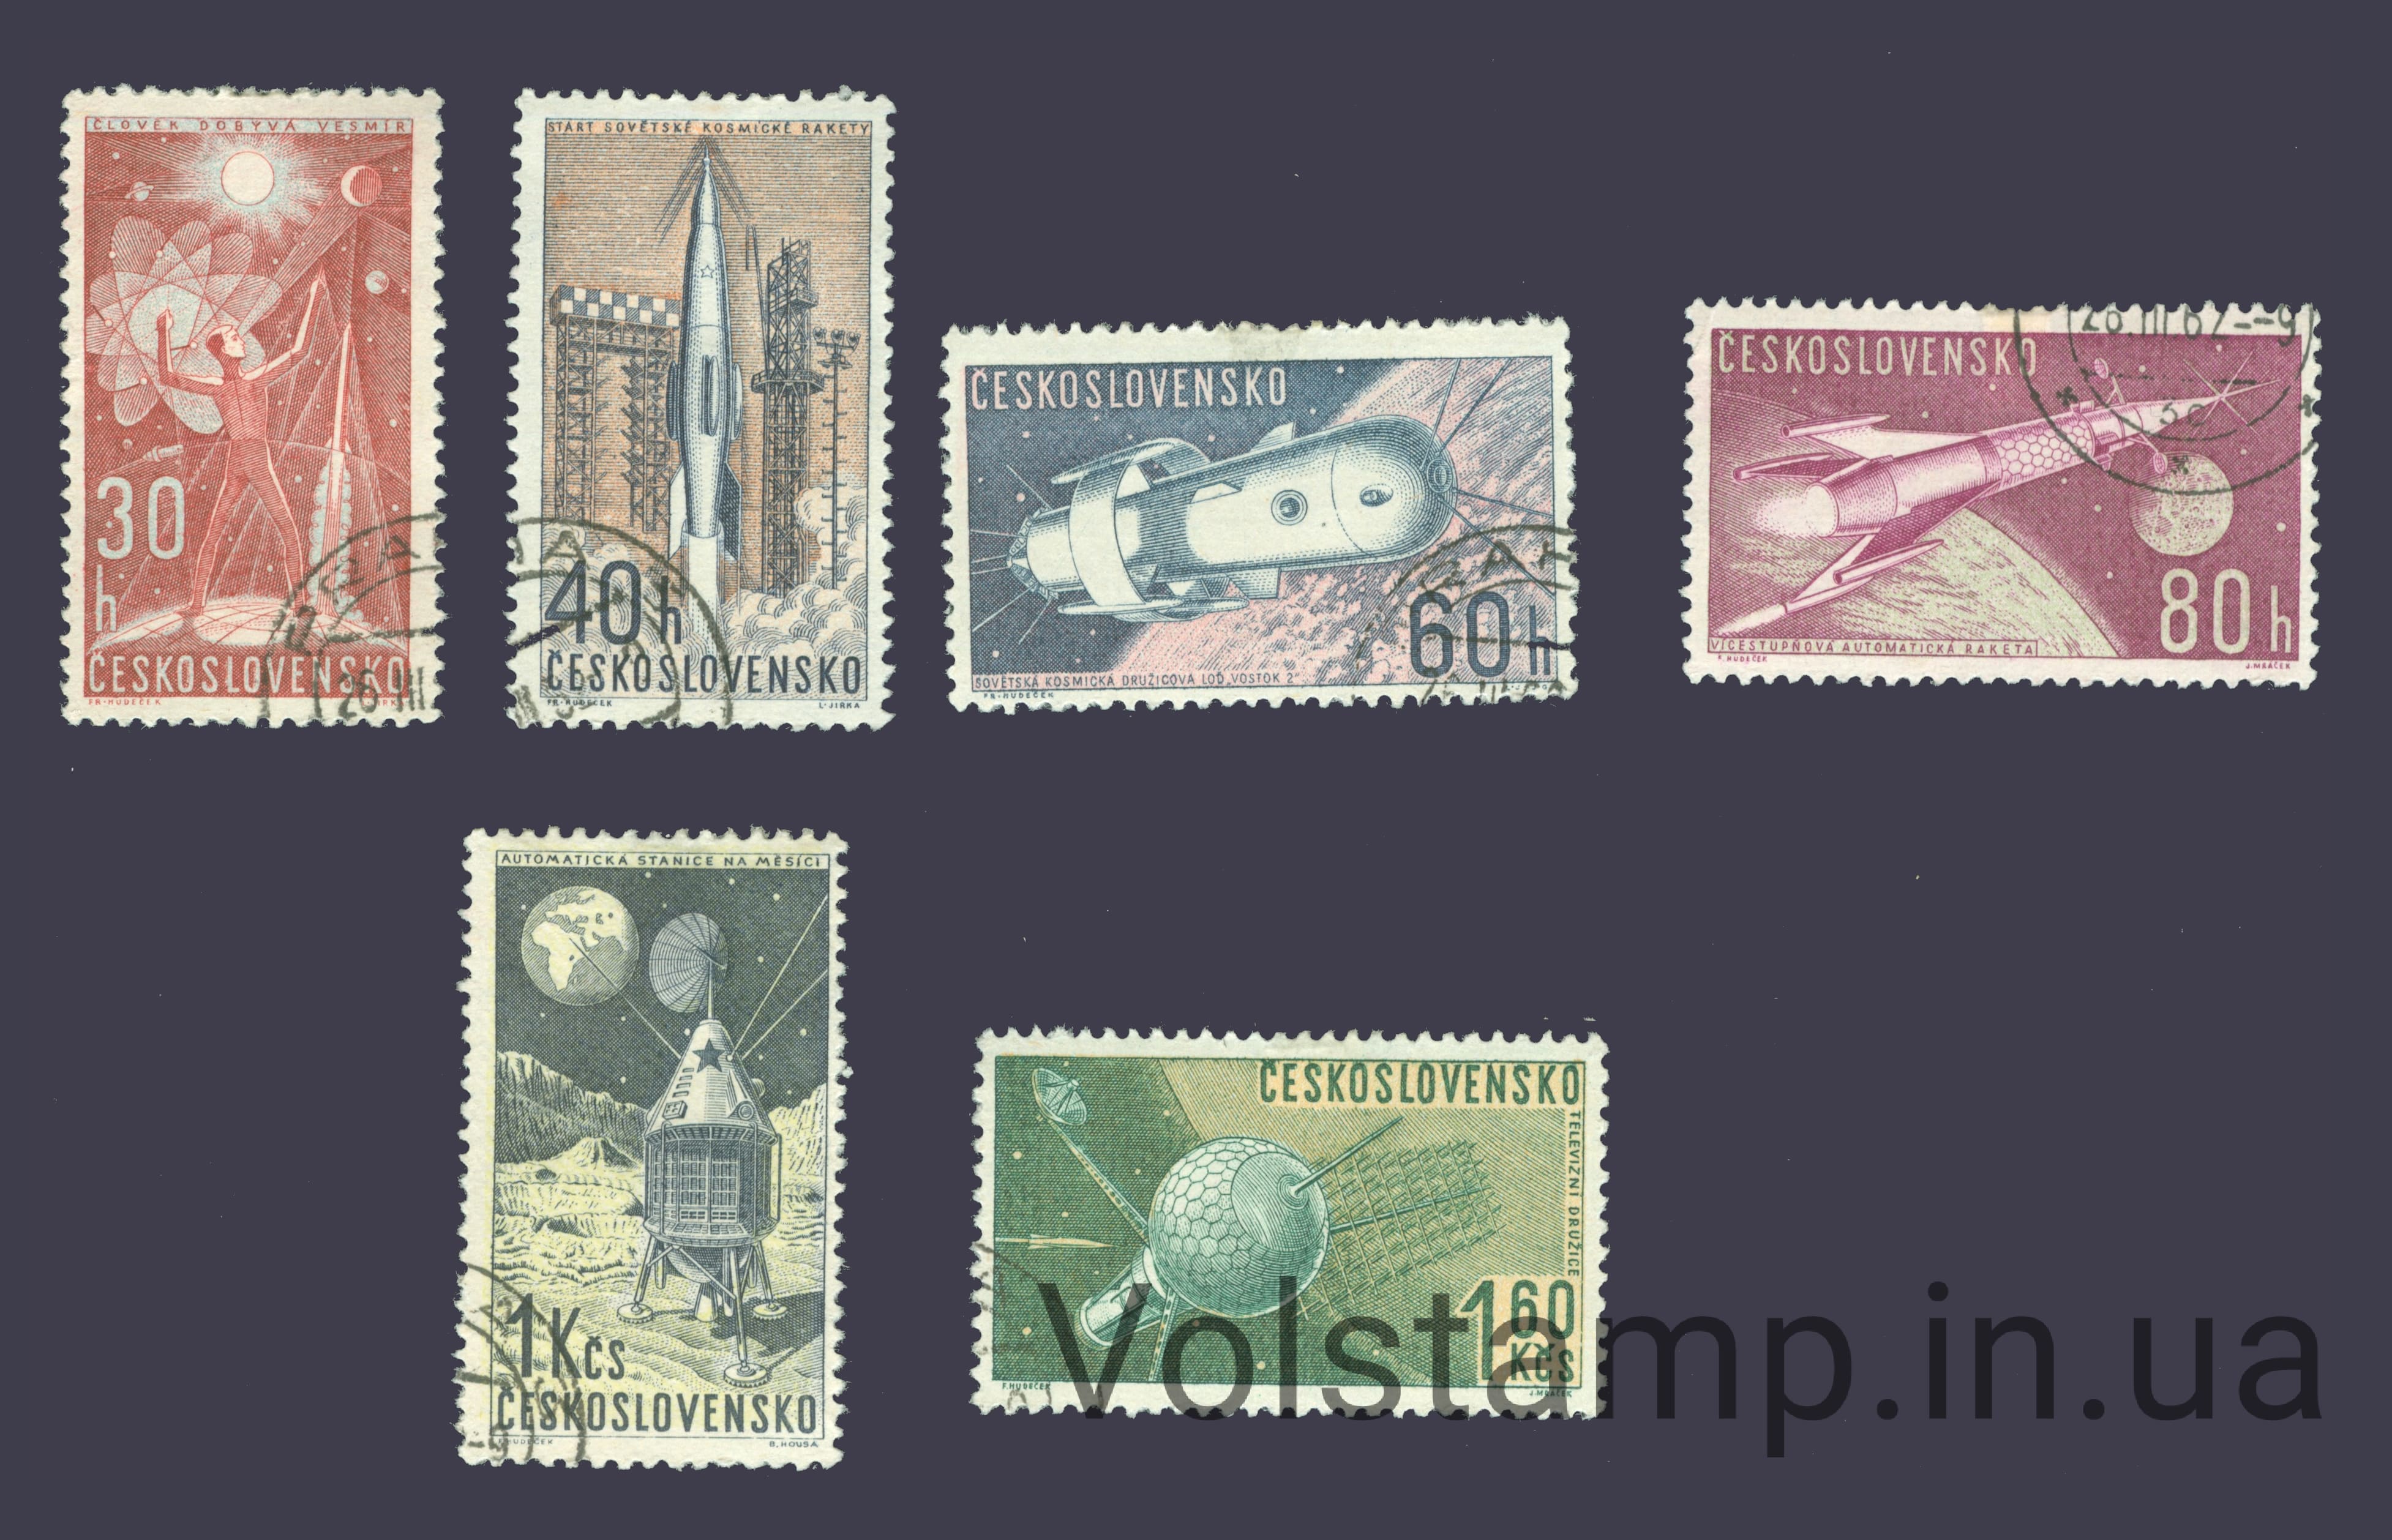 1962 Чехословакия Серия марок (Исследование космоса) Гашеные №1329-1334